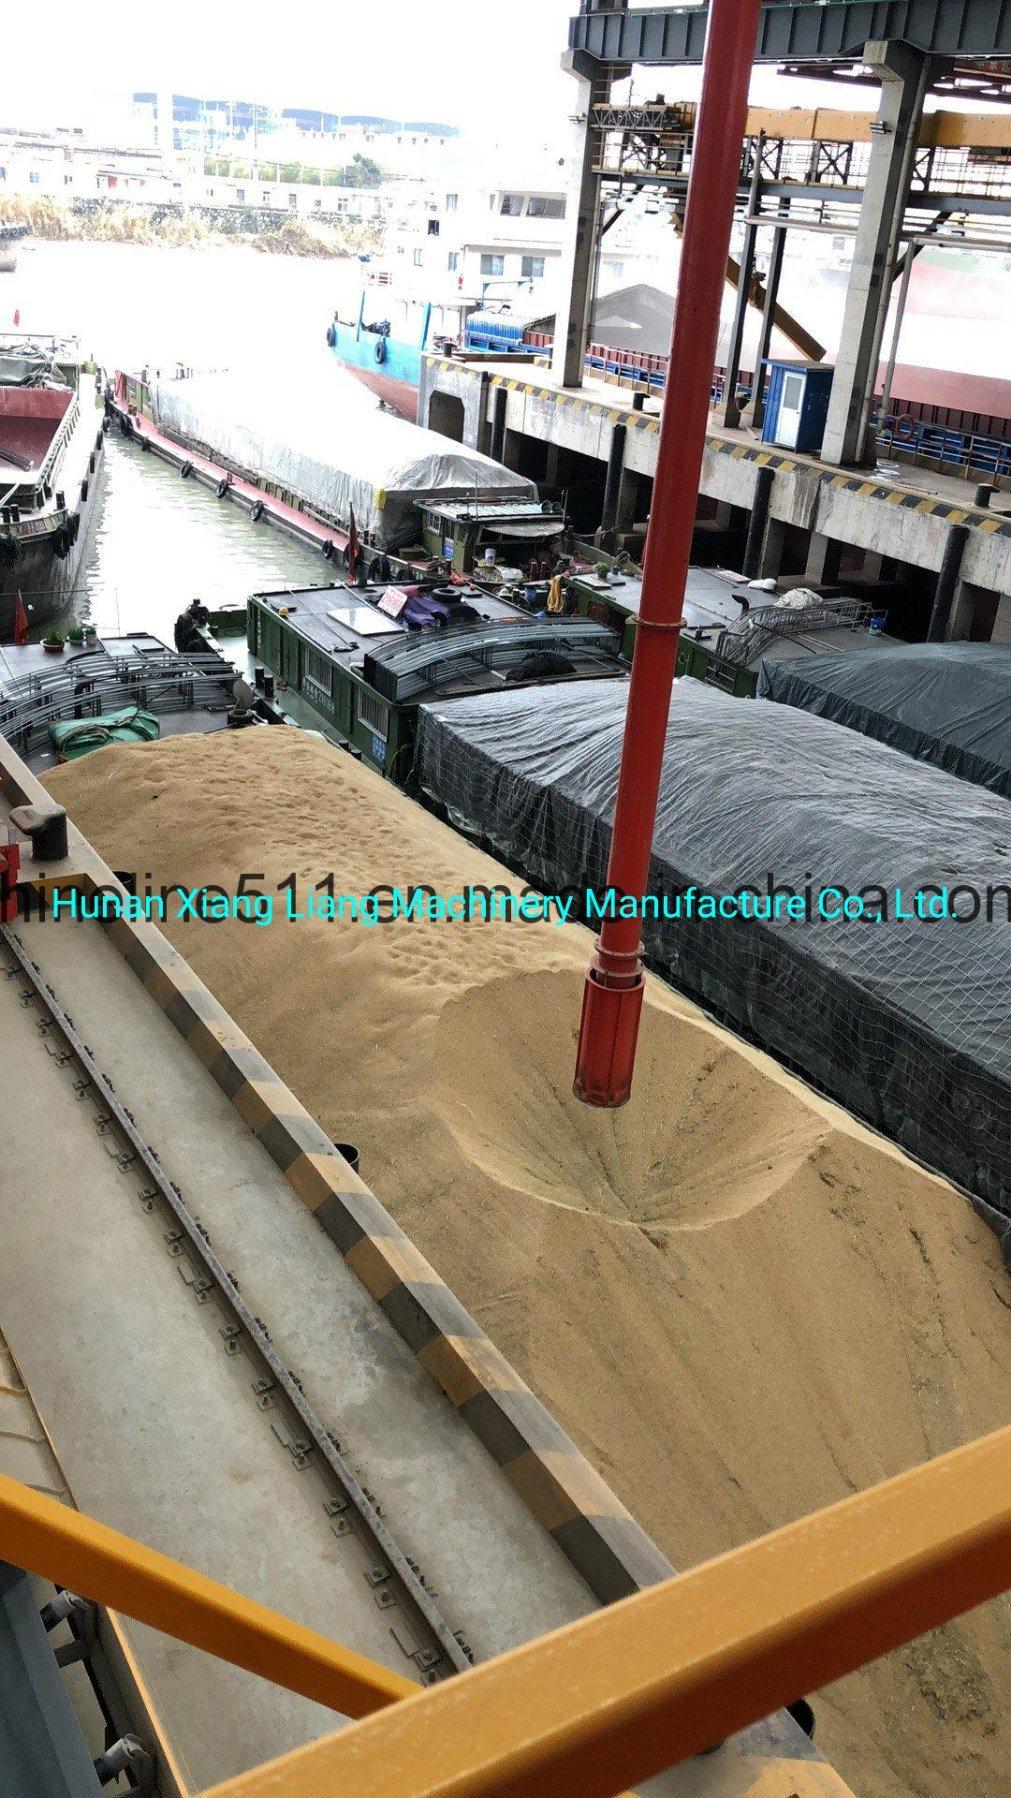 Hunan Xiangliang Machinery Manufacture Co., Ltd. Transport Pneumatic Grain Unloader